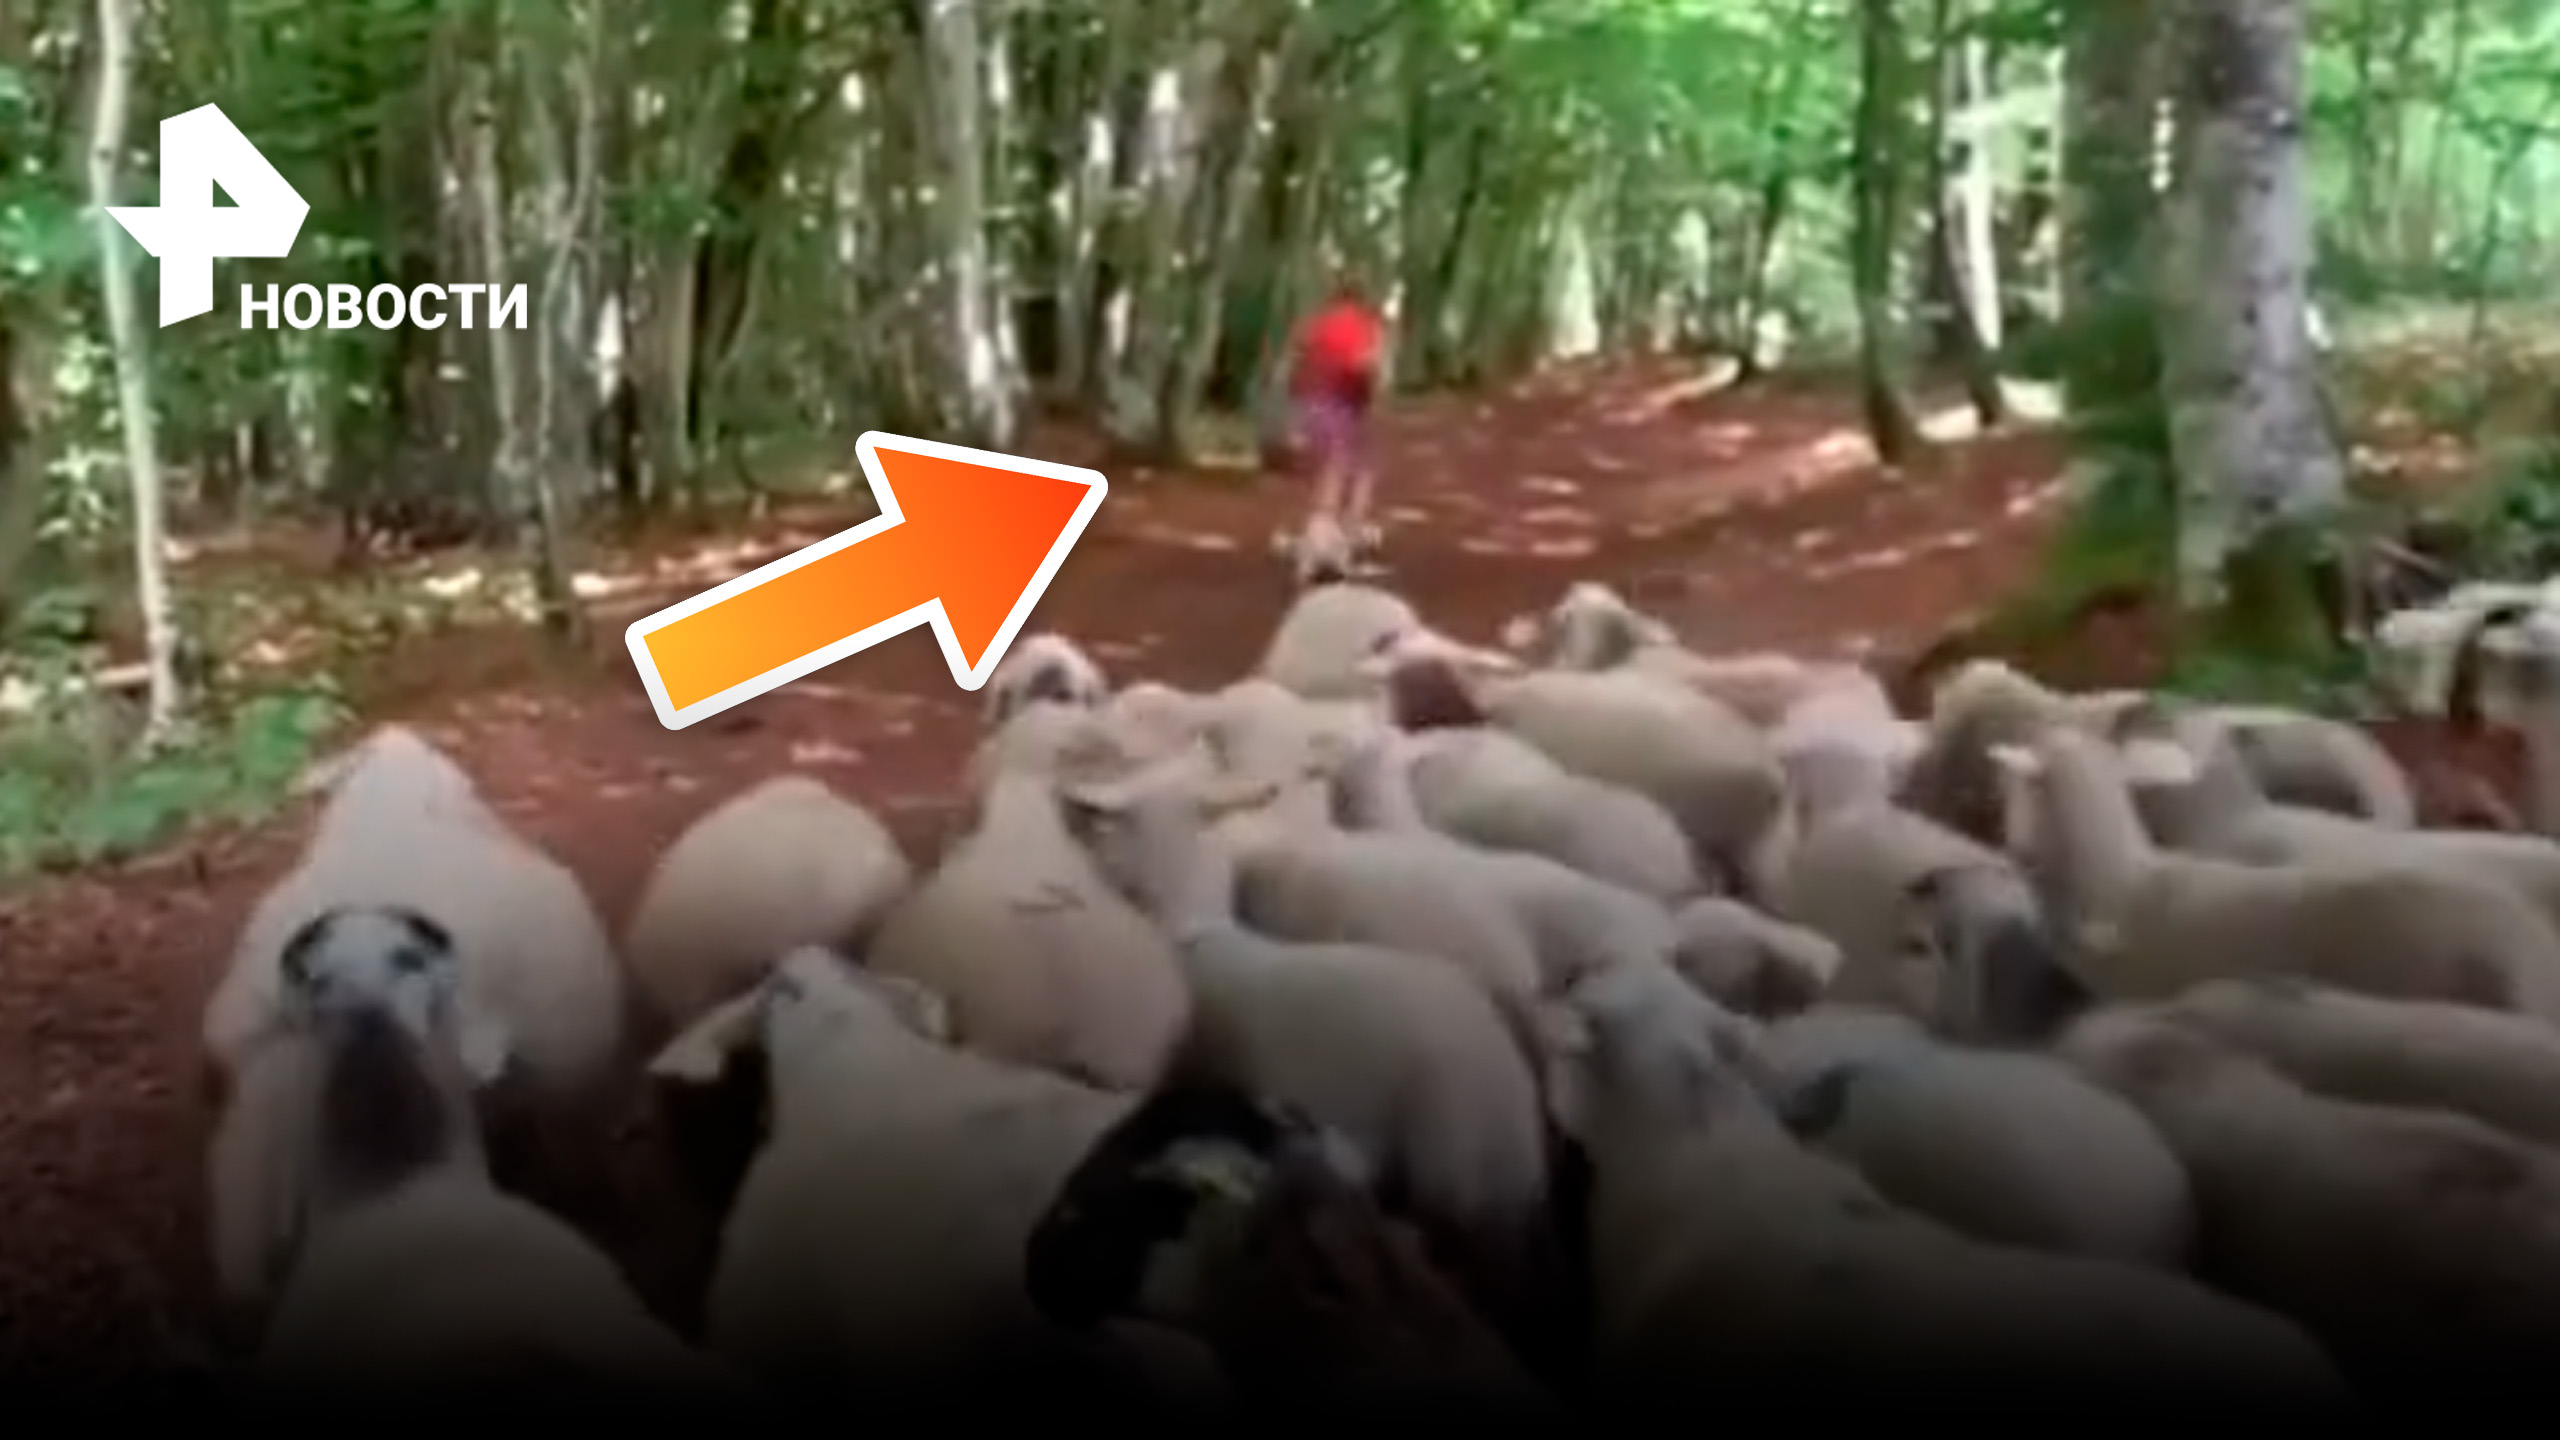 Бегунья внезапно стала пастухом - отара овец присоединилась к девушке в лесу / РЕН Новости